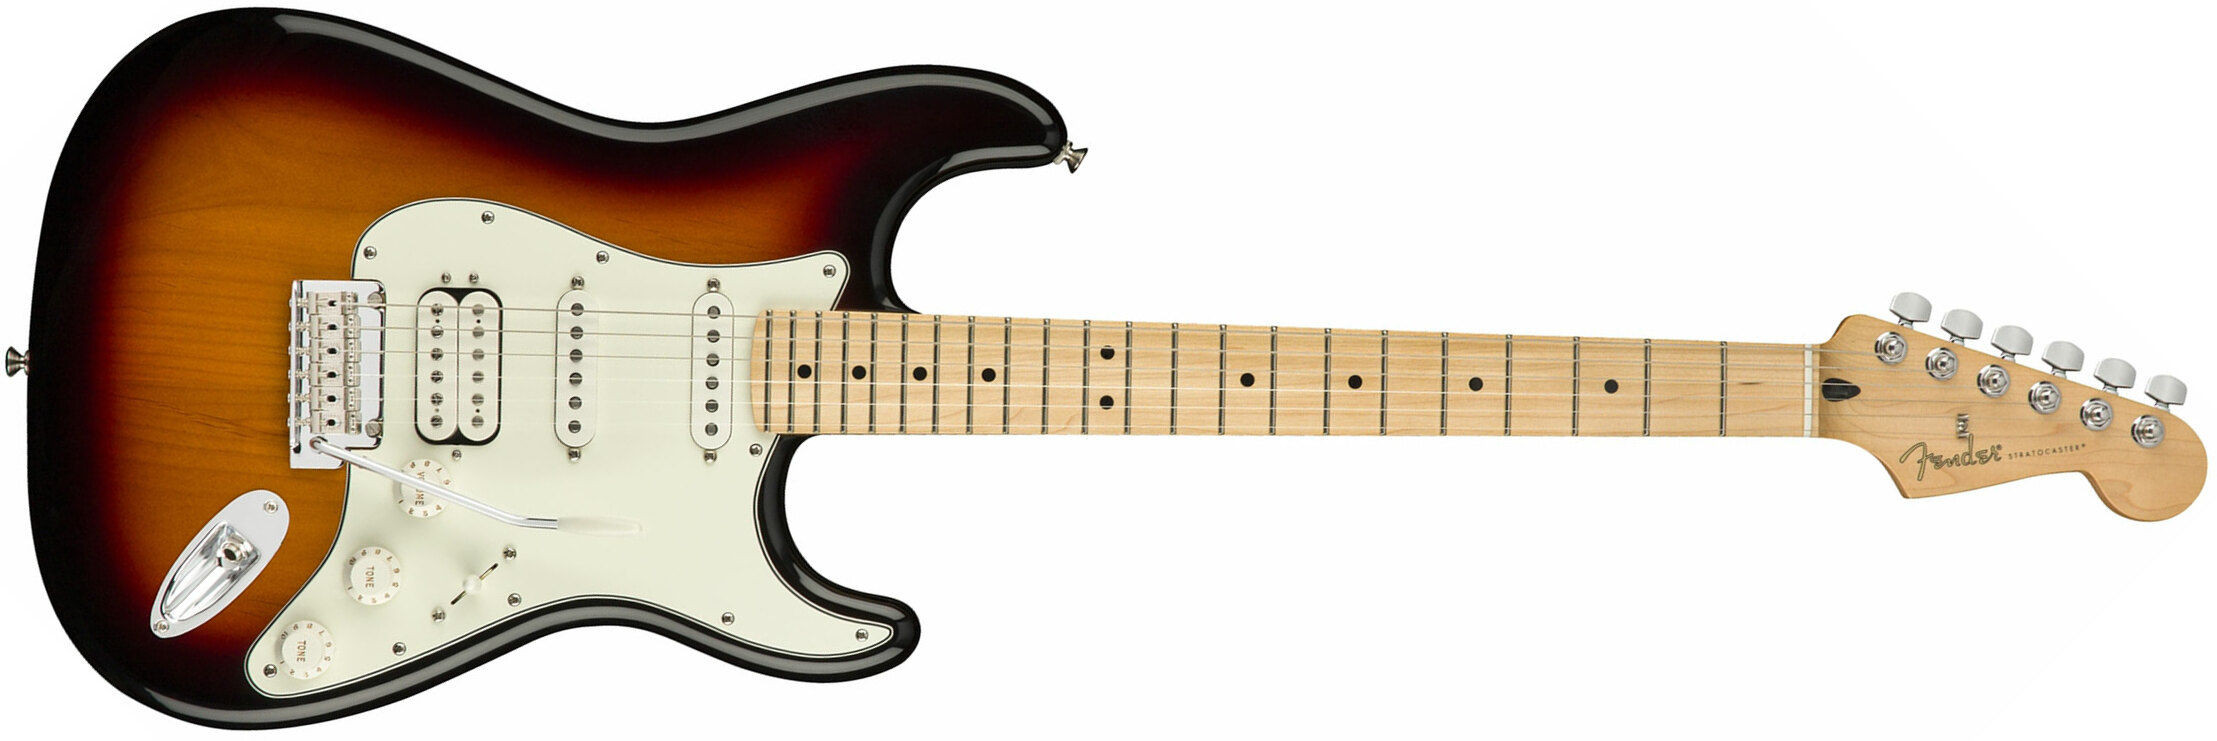 Fender Strat Player Mex Hss Mn - 3-color Sunburst - Guitarra eléctrica con forma de str. - Main picture